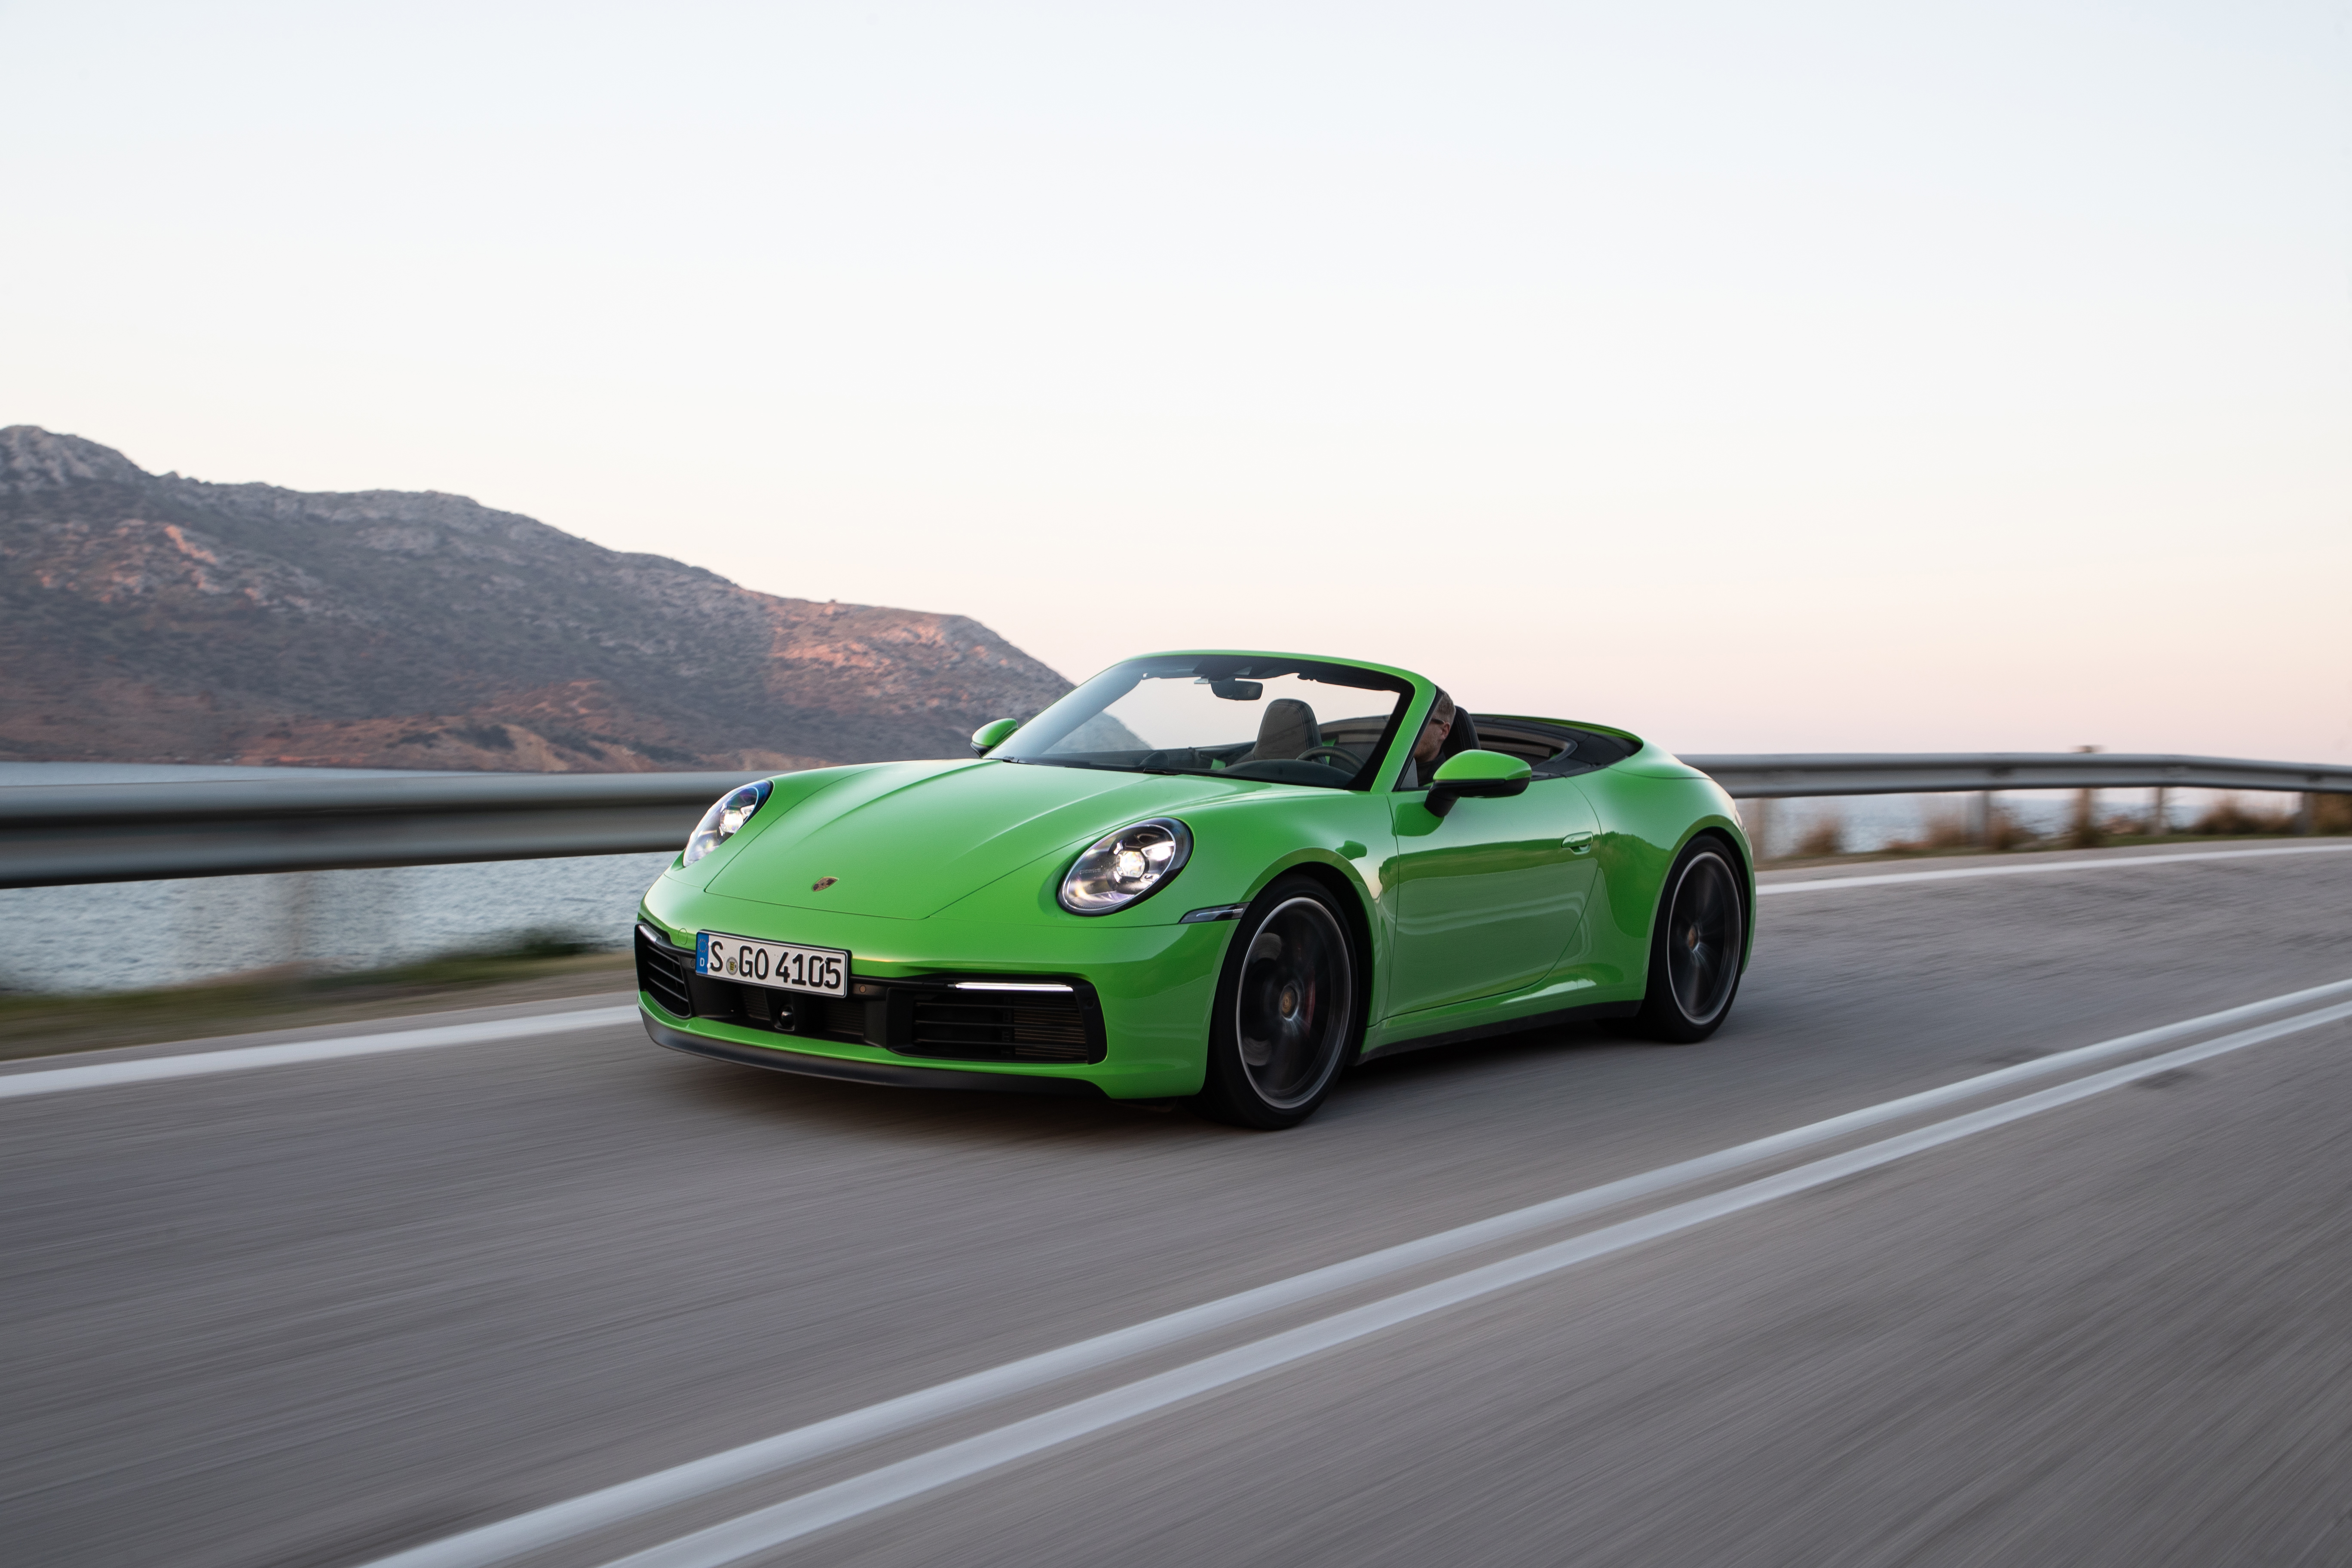 Descarga gratuita de fondo de pantalla para móvil de Porsche, Coche, Porsche 911, Vehículos, Porsche 911 Carrera, Coche Verde.